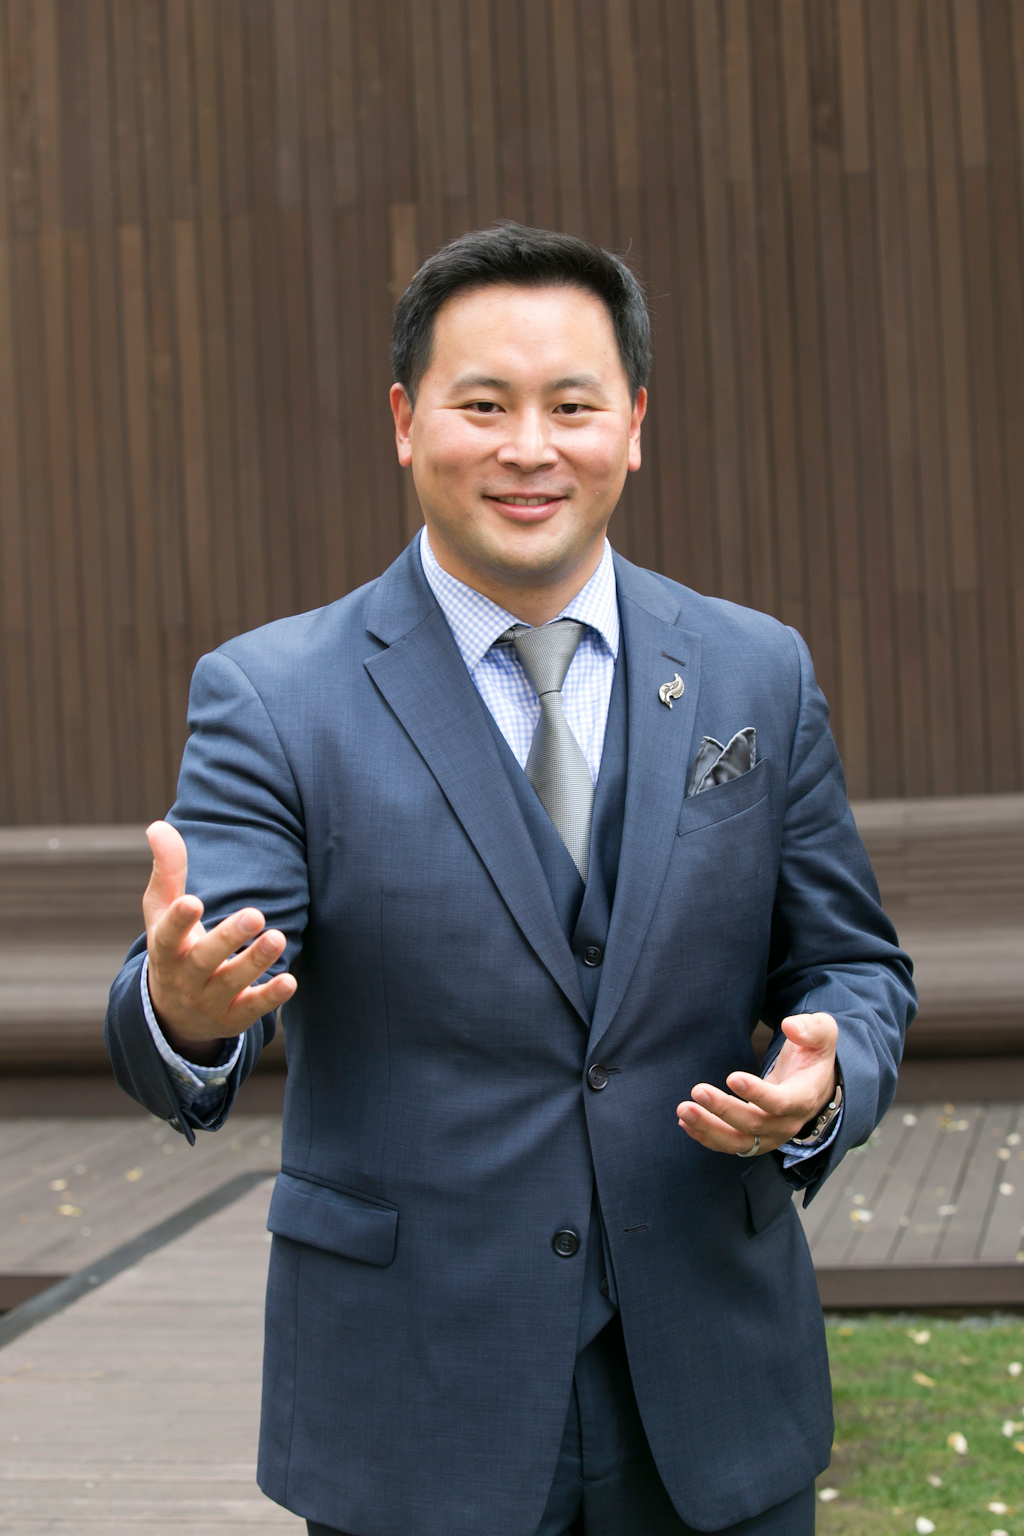 ローン・キム（３６、韓国名キム・テソク、民主党）ニューヨーク州下院議員